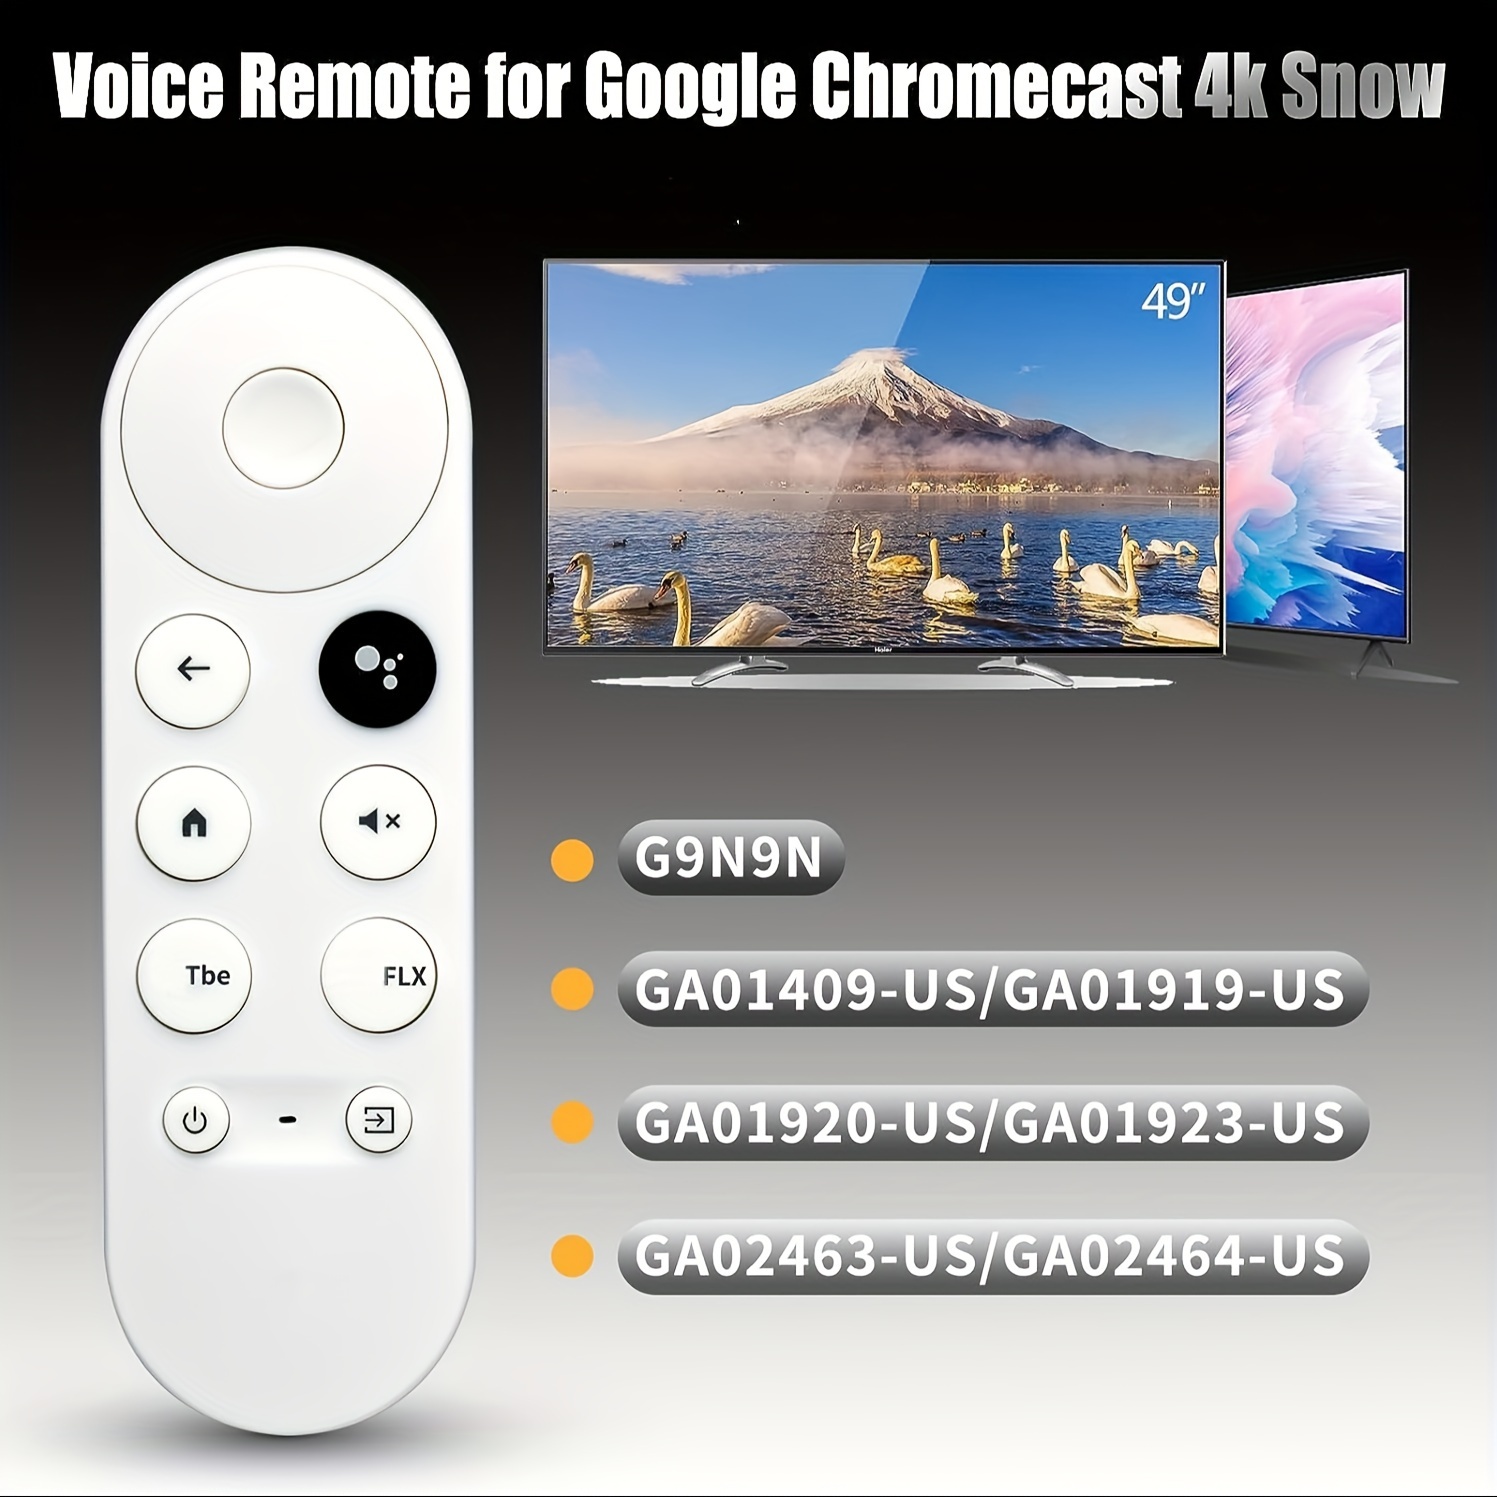 Mando a distancia por voz, Bluetooth, para Google Chromecast 4K Snow TV  GA01919REM, GA01409-US, GA02463-US, GA02464-US, GA03131-US - AliExpress